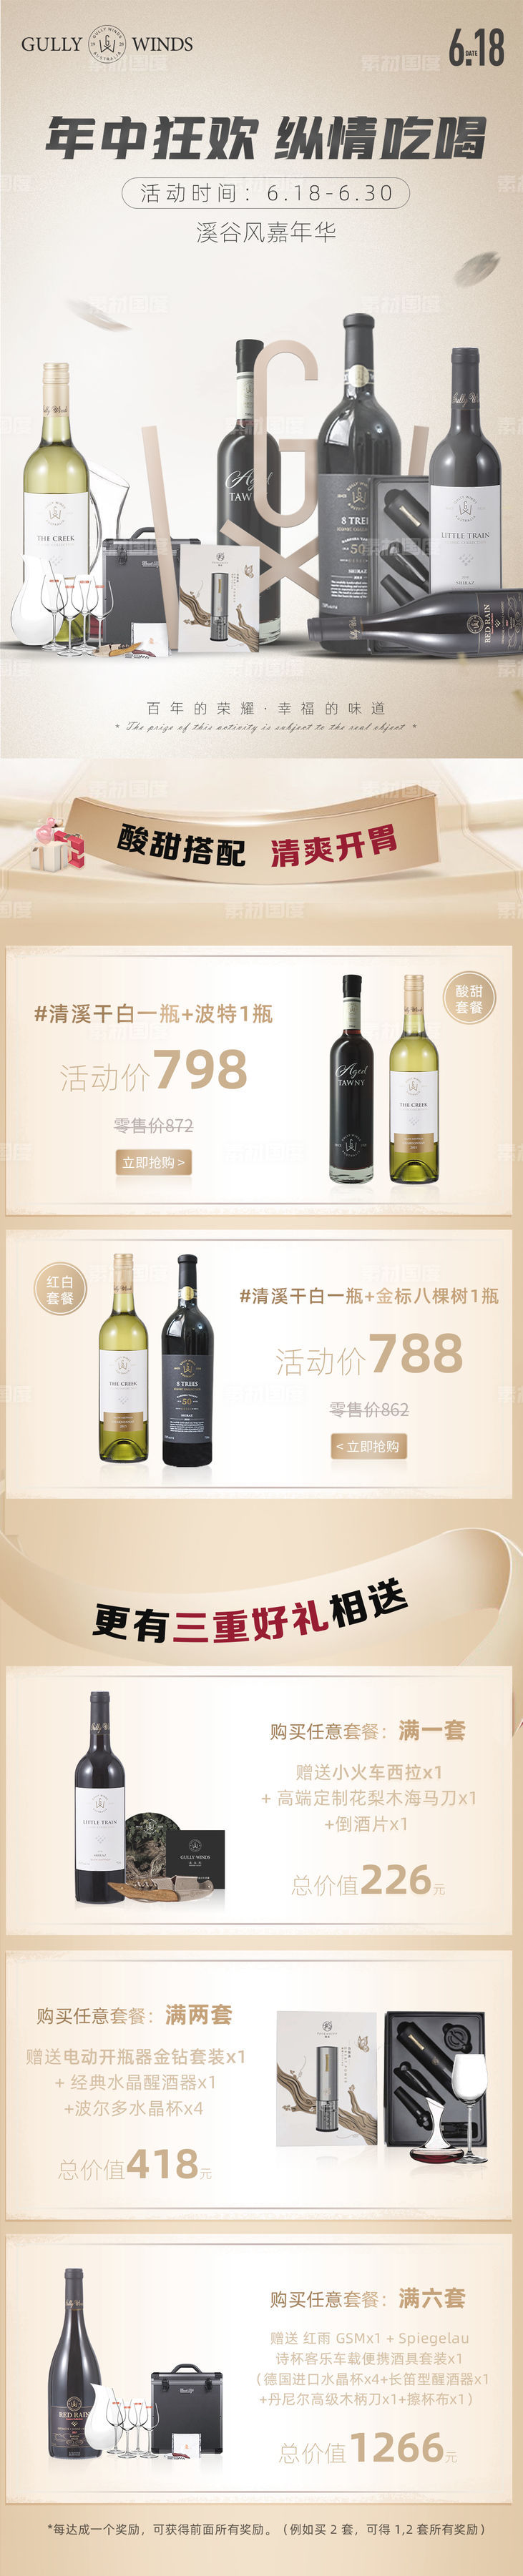 618电商高端葡萄酒产品促销活动页